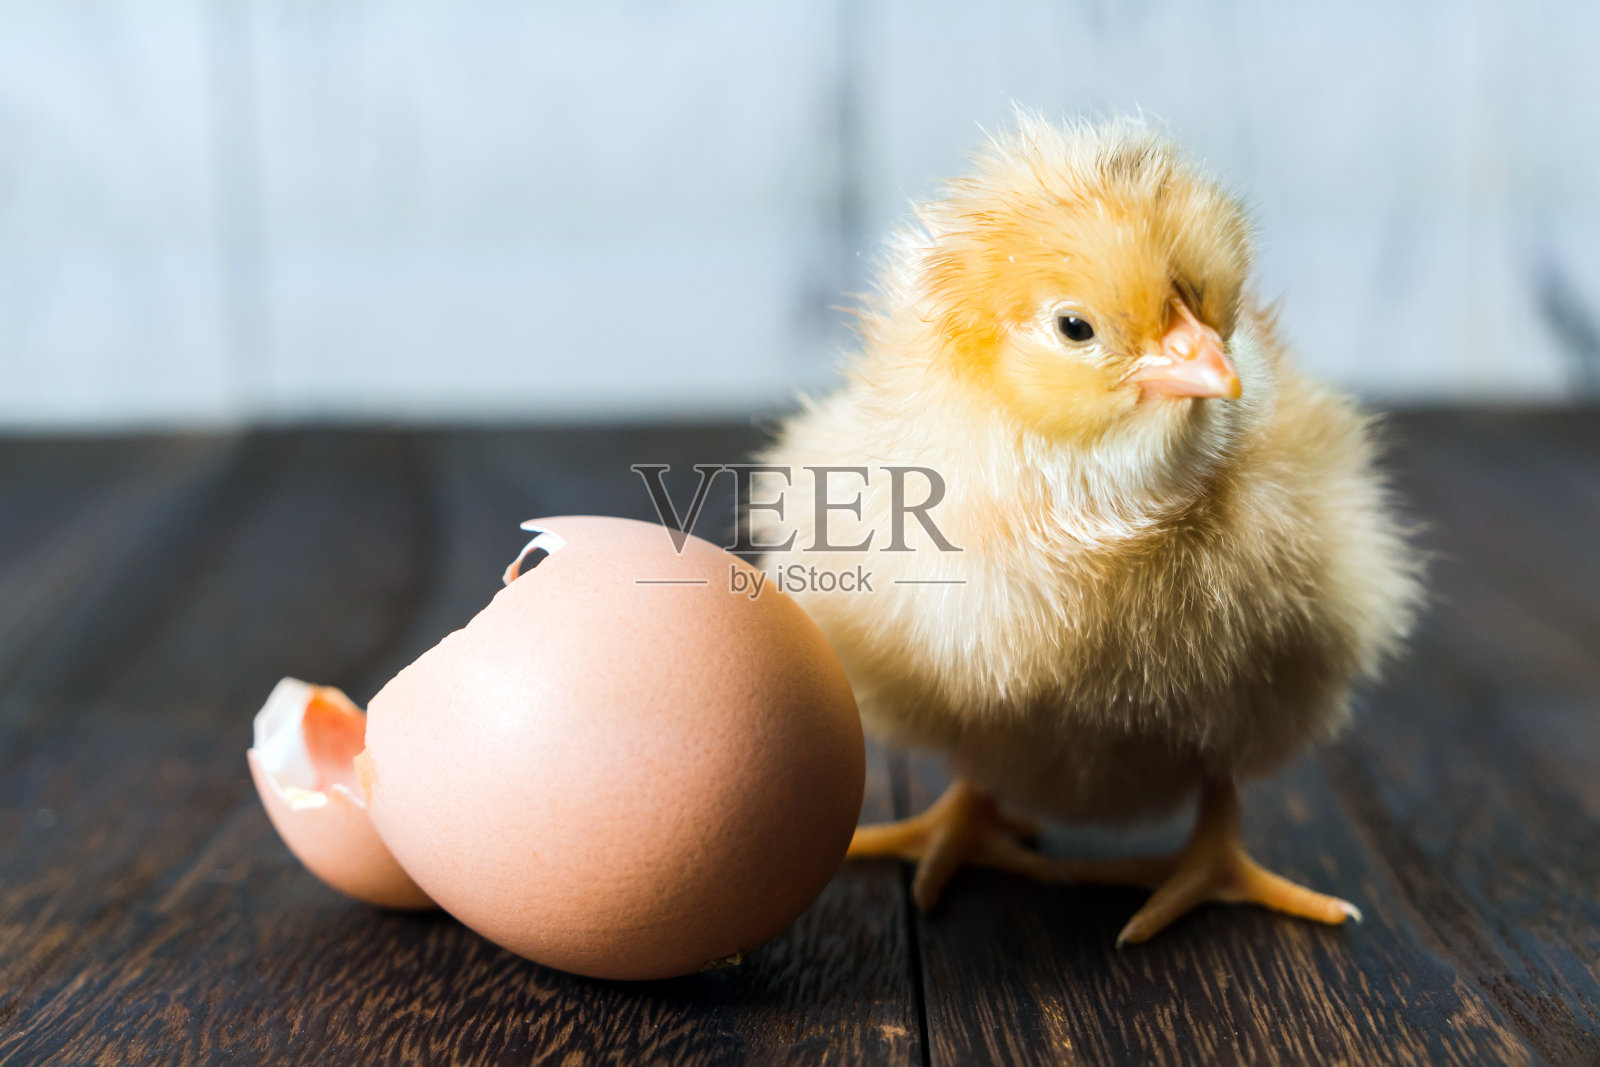 21天，徐州小学生记录小鸡人工孵化全过程！ - 哔哩哔哩